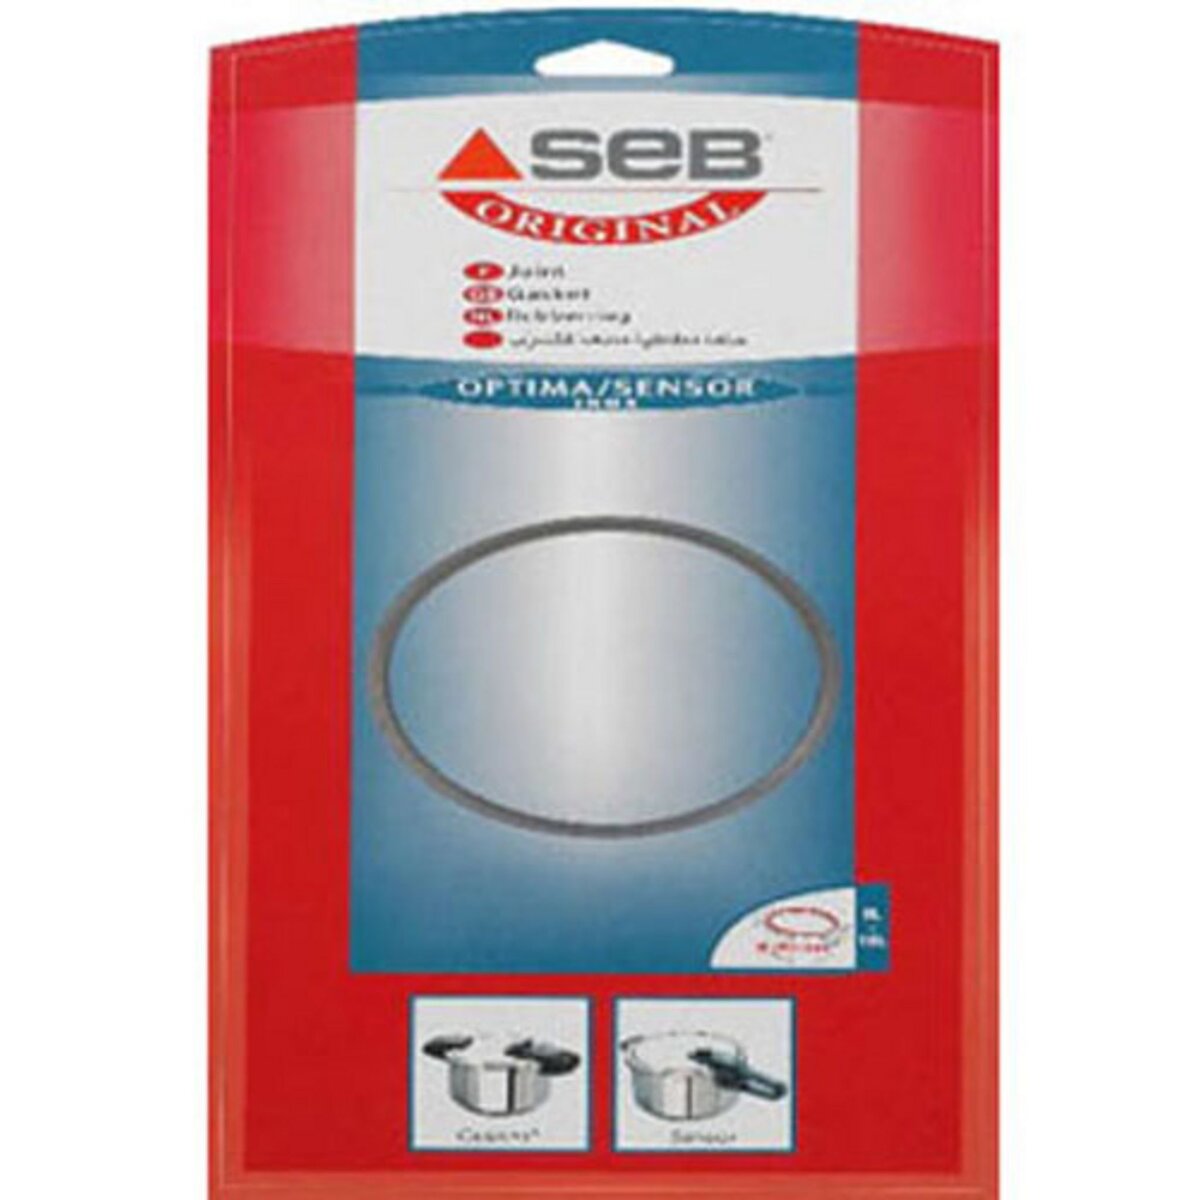 Seb SEB980158 Auto Cuiseur Joint Joint pour Autocuiseur Seb